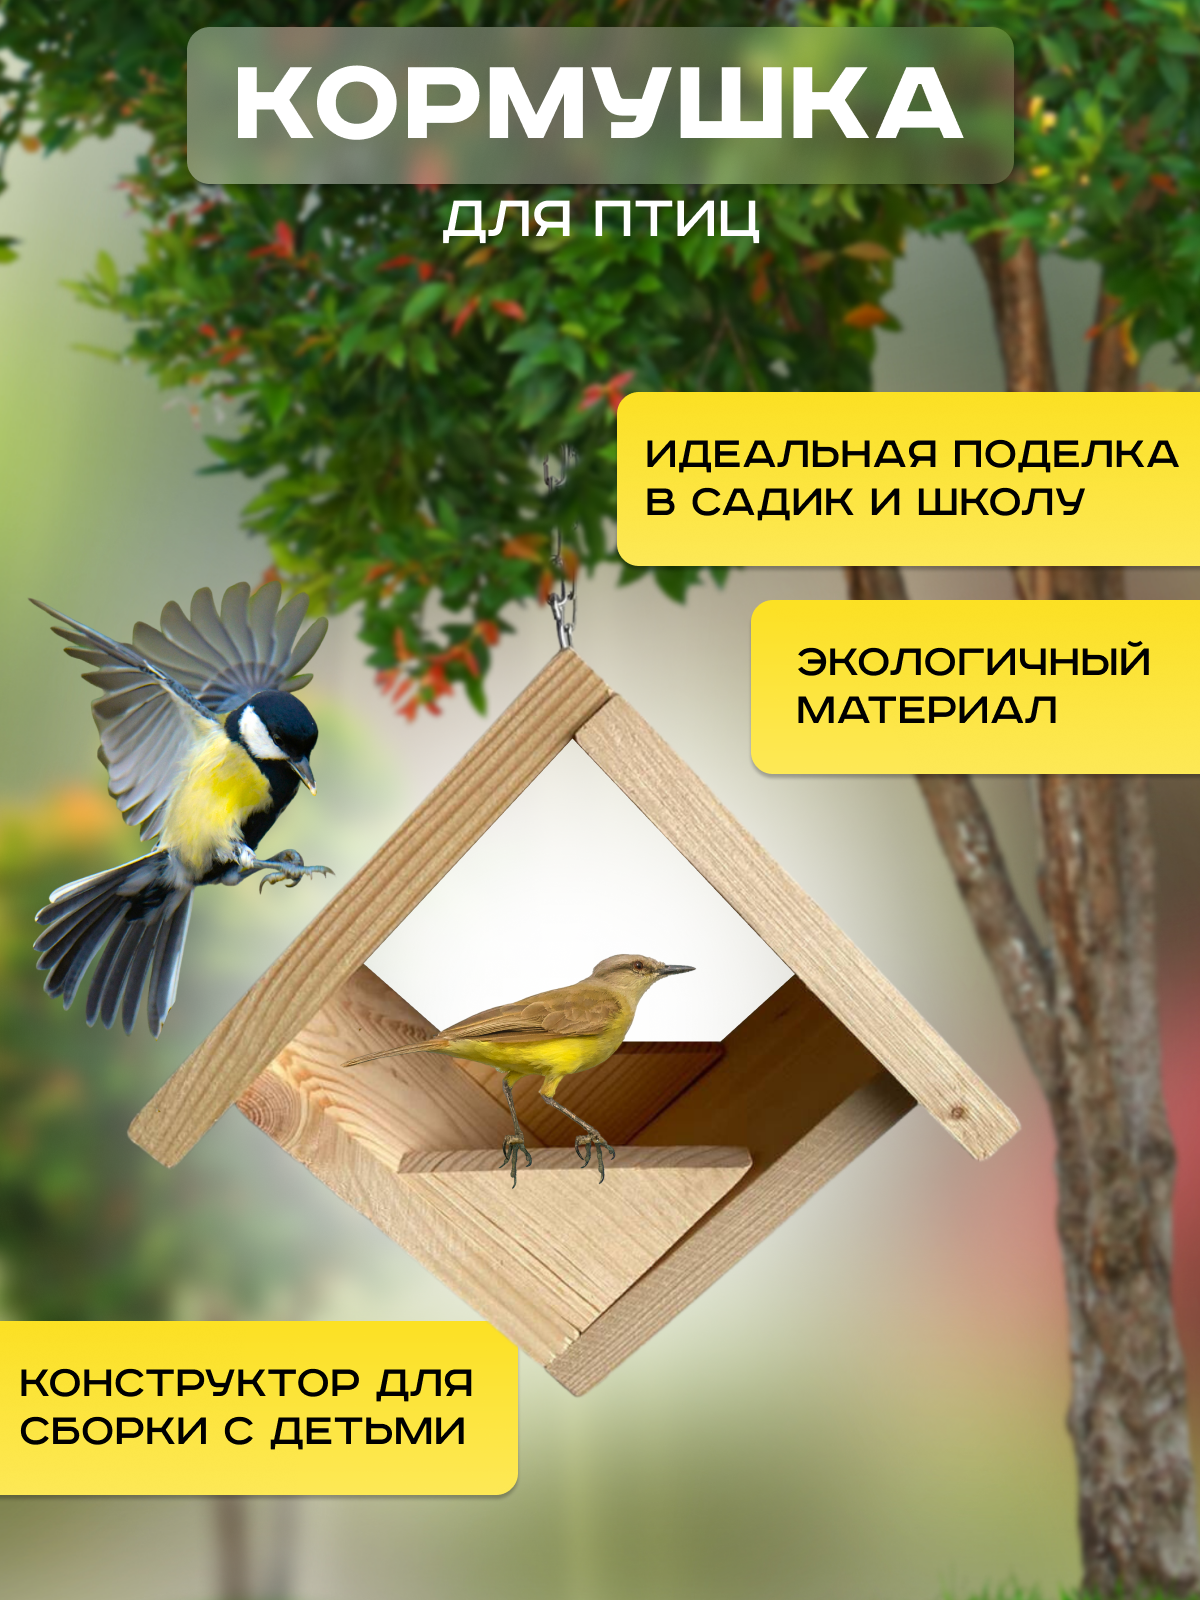 Кормушка для птиц подвесная / Скворечник / Конструктор